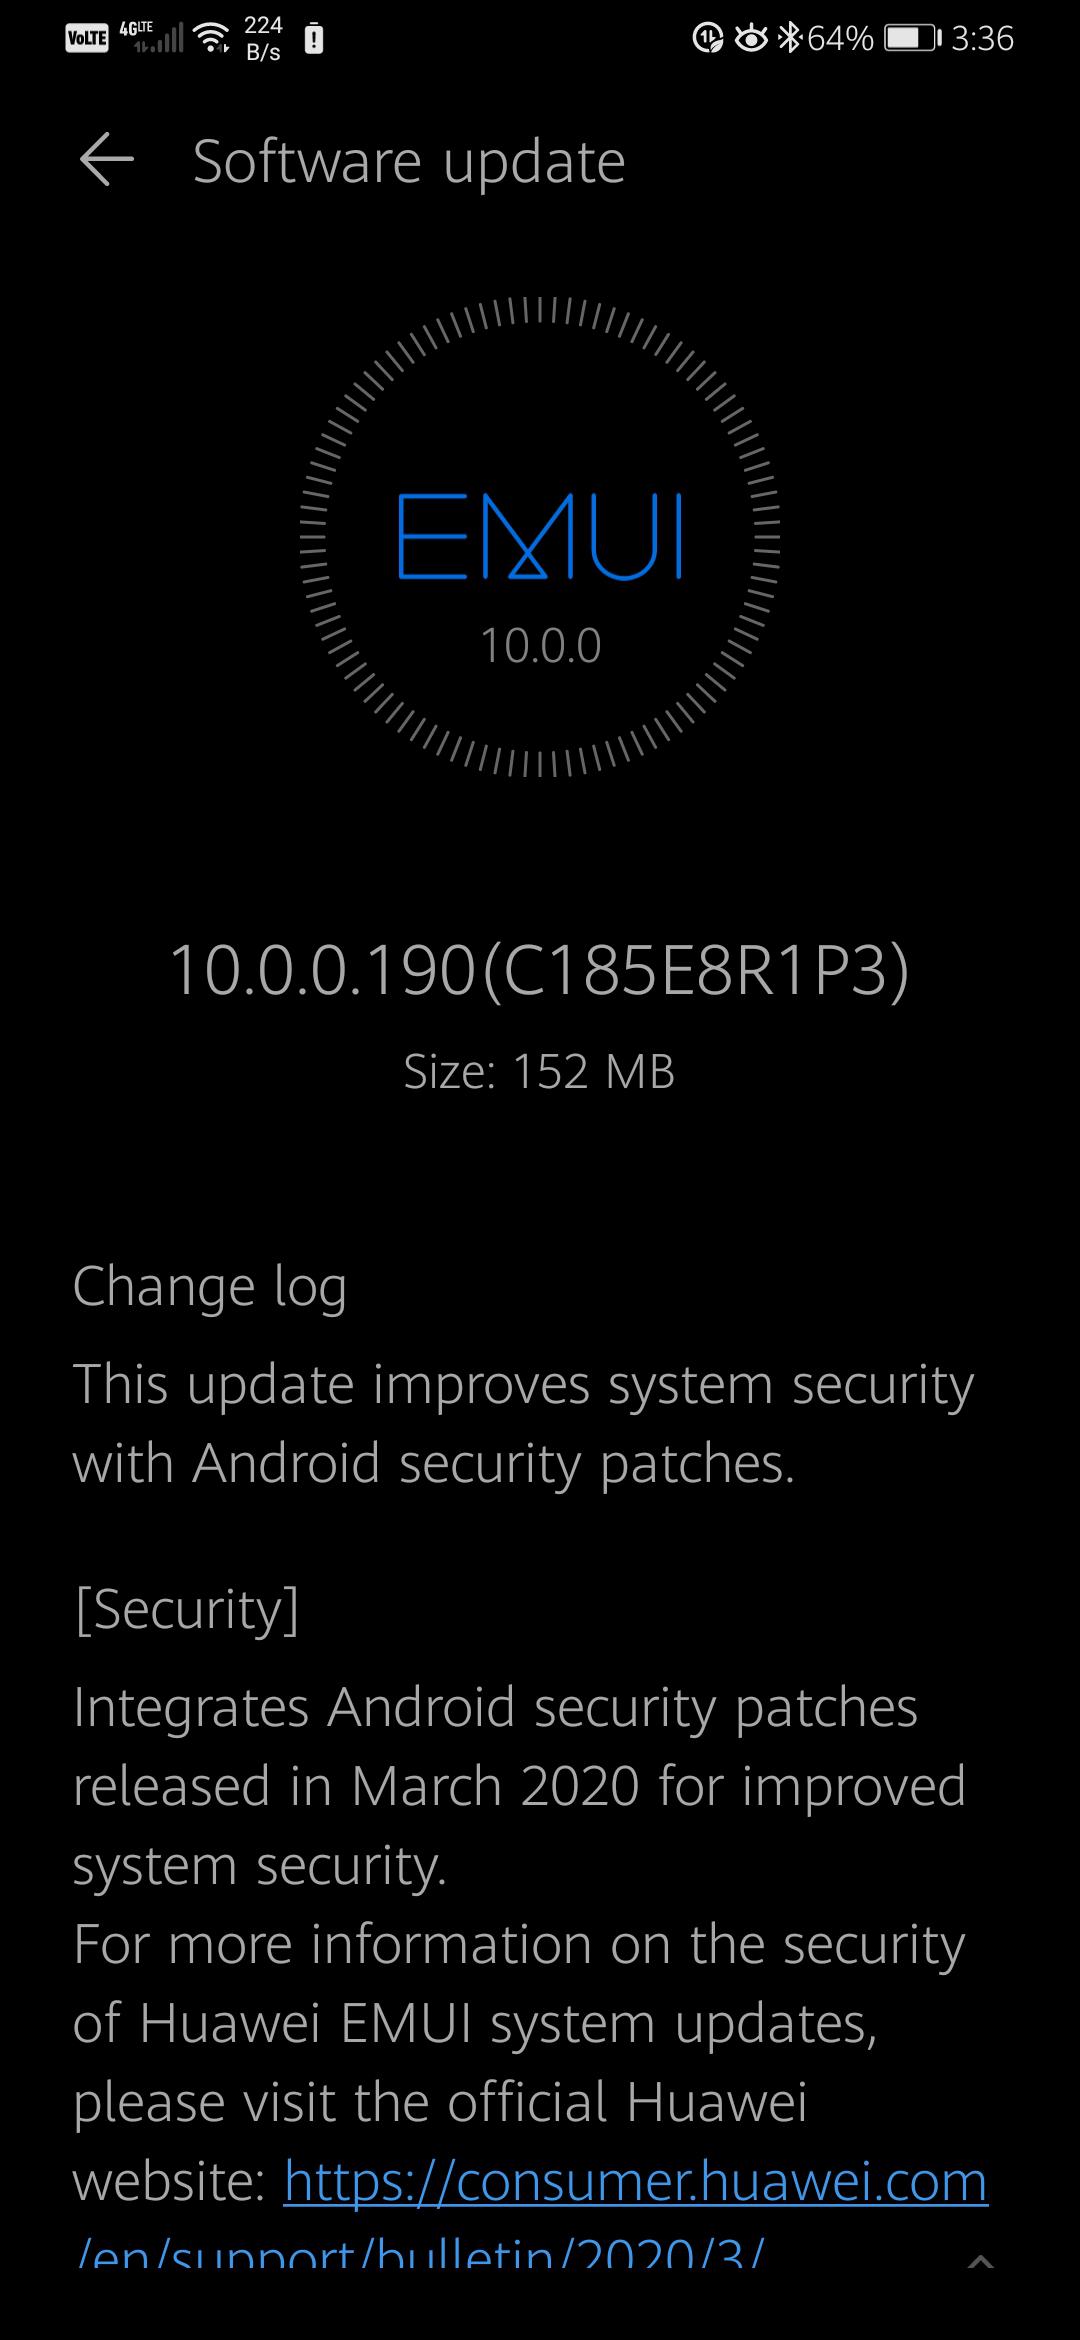 EMUI 10.0.0.190(C185E8R1P3) security update